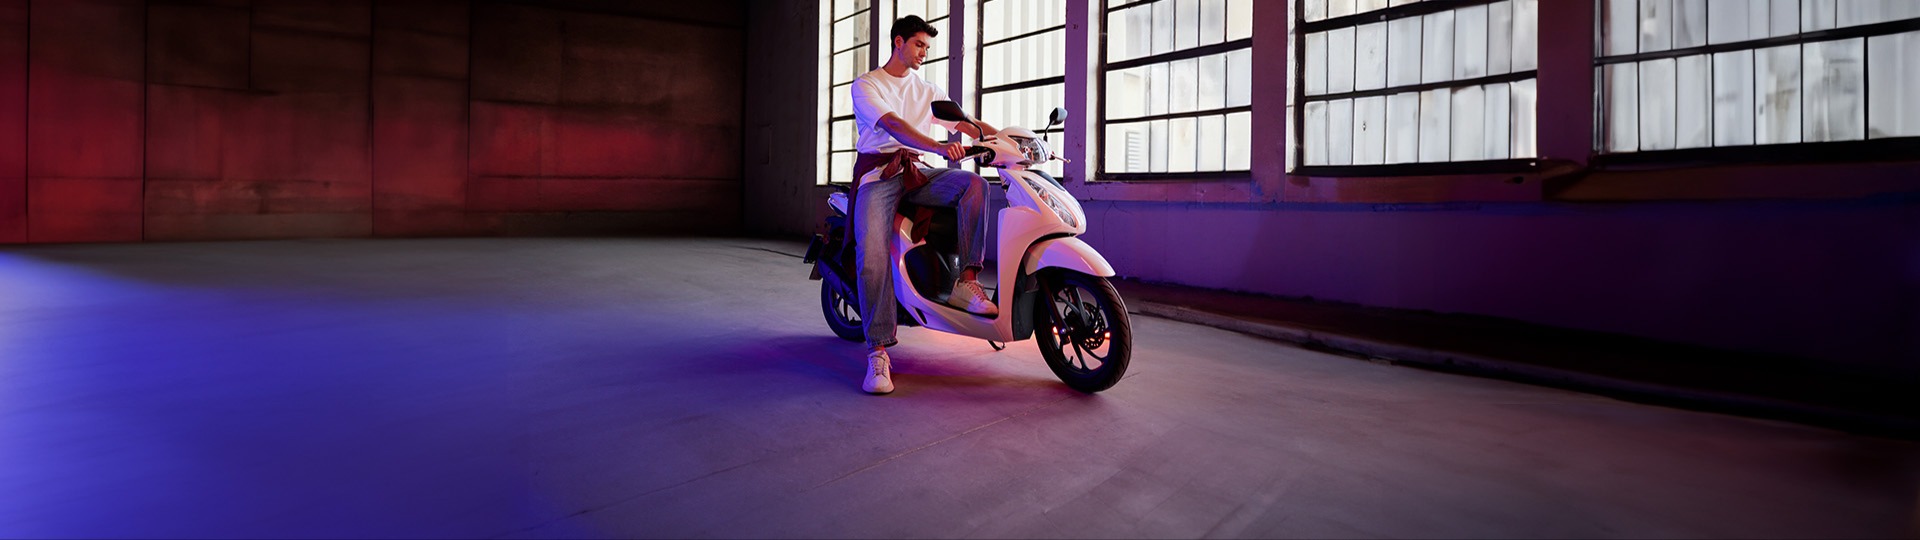  Neza Motor 40.000 TL’ye vade farksız 12 ay taksitle sizin de ilk motosikletiniz Honda Dio olsun.